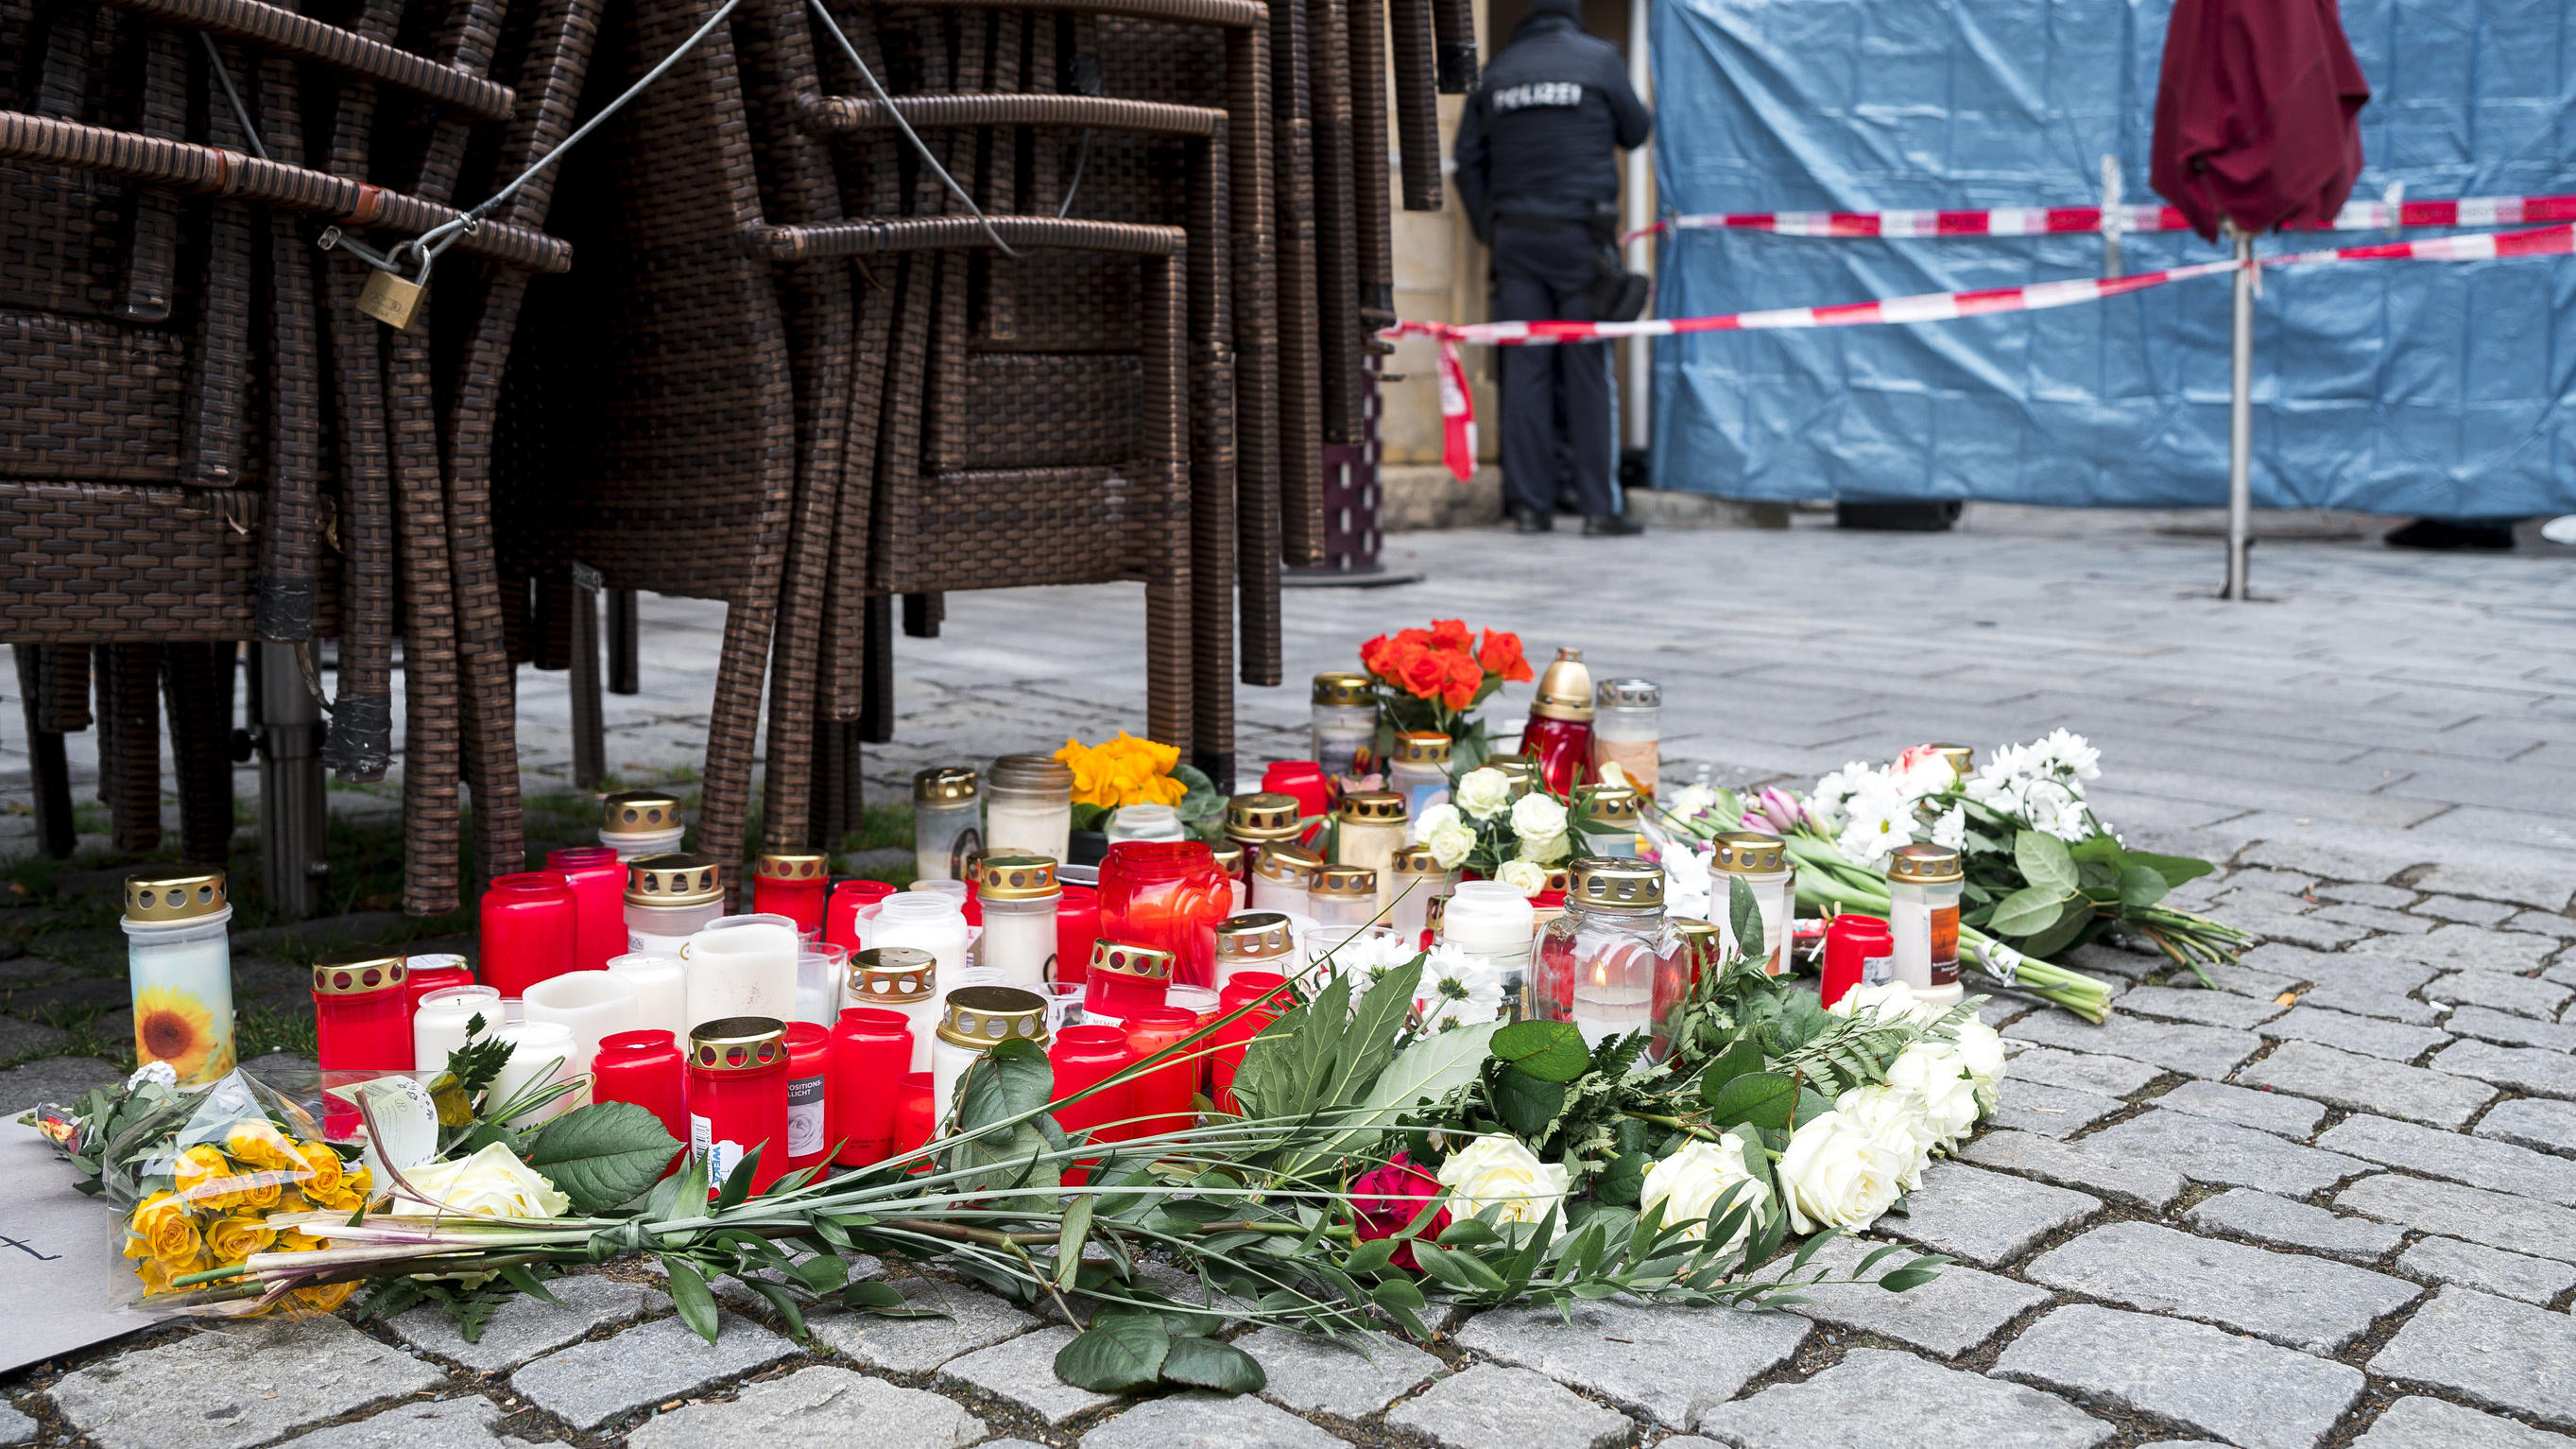 13.03.2023, Bayern, Lichtenfels: Auf dem Platz vor dem Blumengeschäft, in dem am Freitagabend Mitarbeiterin tot aufgefunden wurde, sind Blumen und Kerzen niedergelegt. Spaziergänger hatten die tote 50-Jährige in dem Blumenladen in der Lichtenfelser I